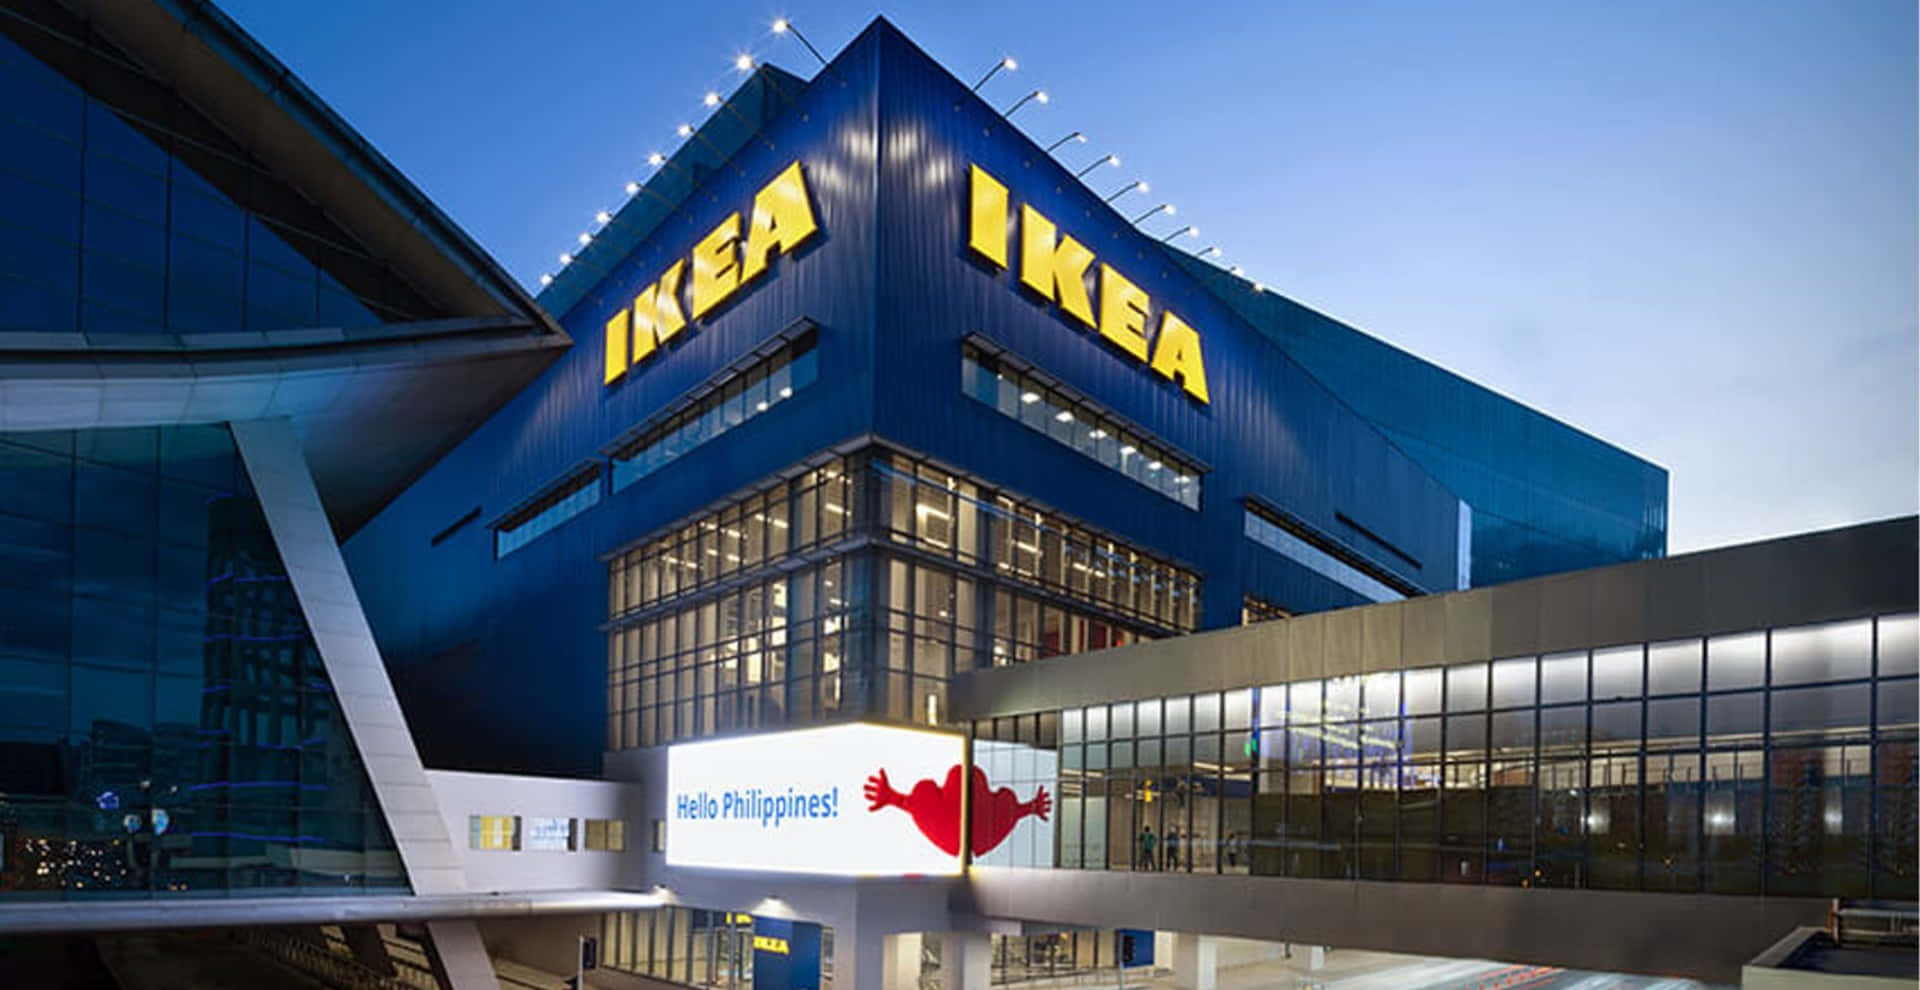 Nuovasede Di Ikea Canada A Montreal